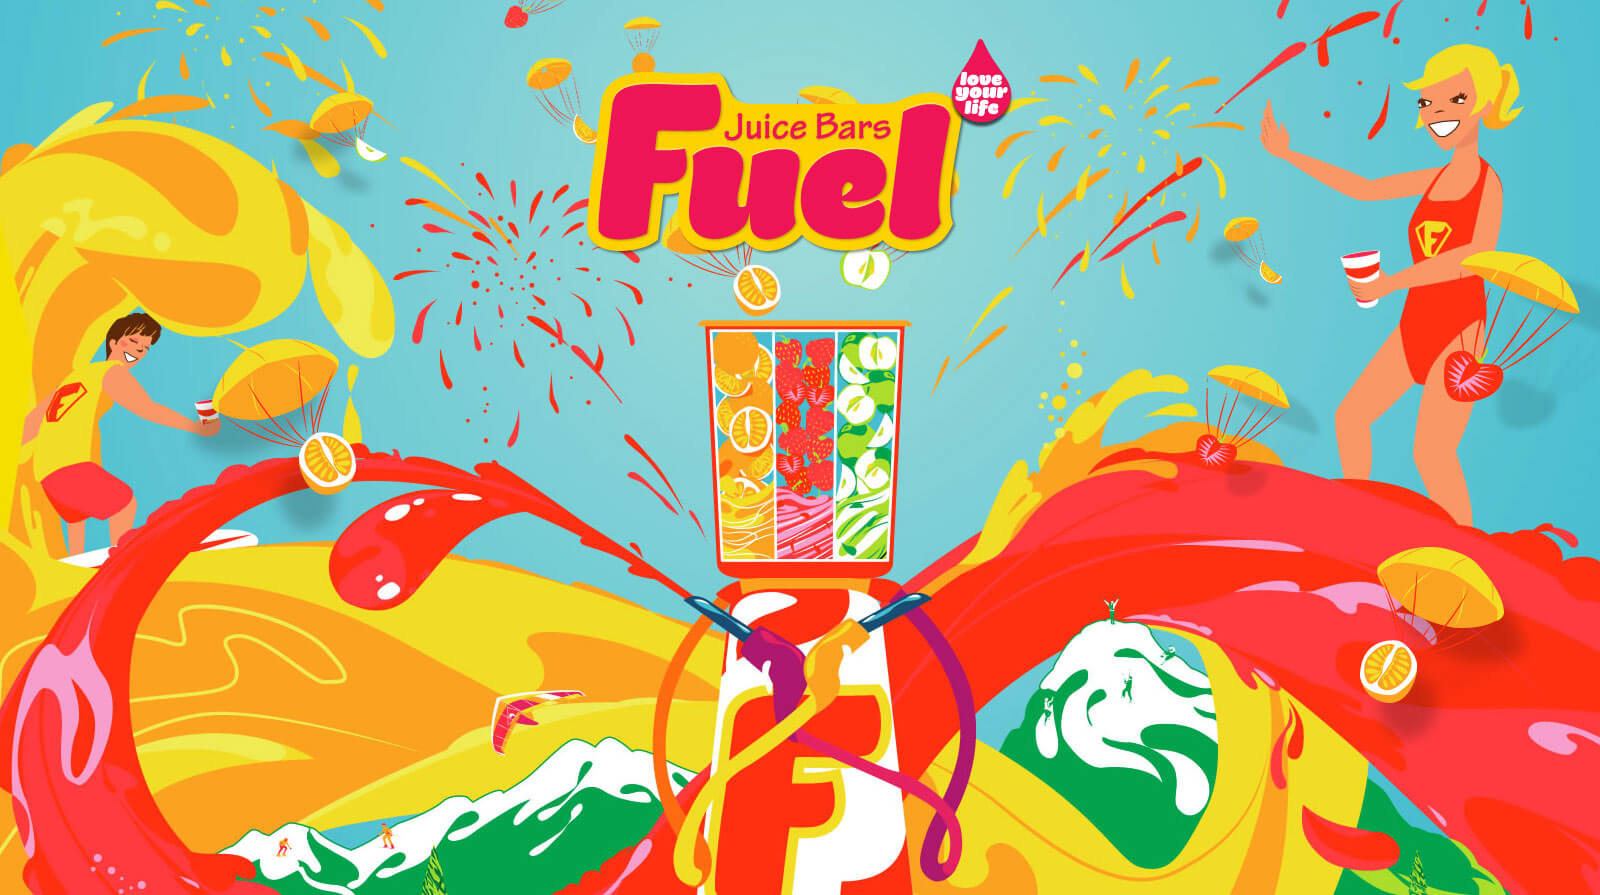 Fuel Juice Bars, new website coming soon